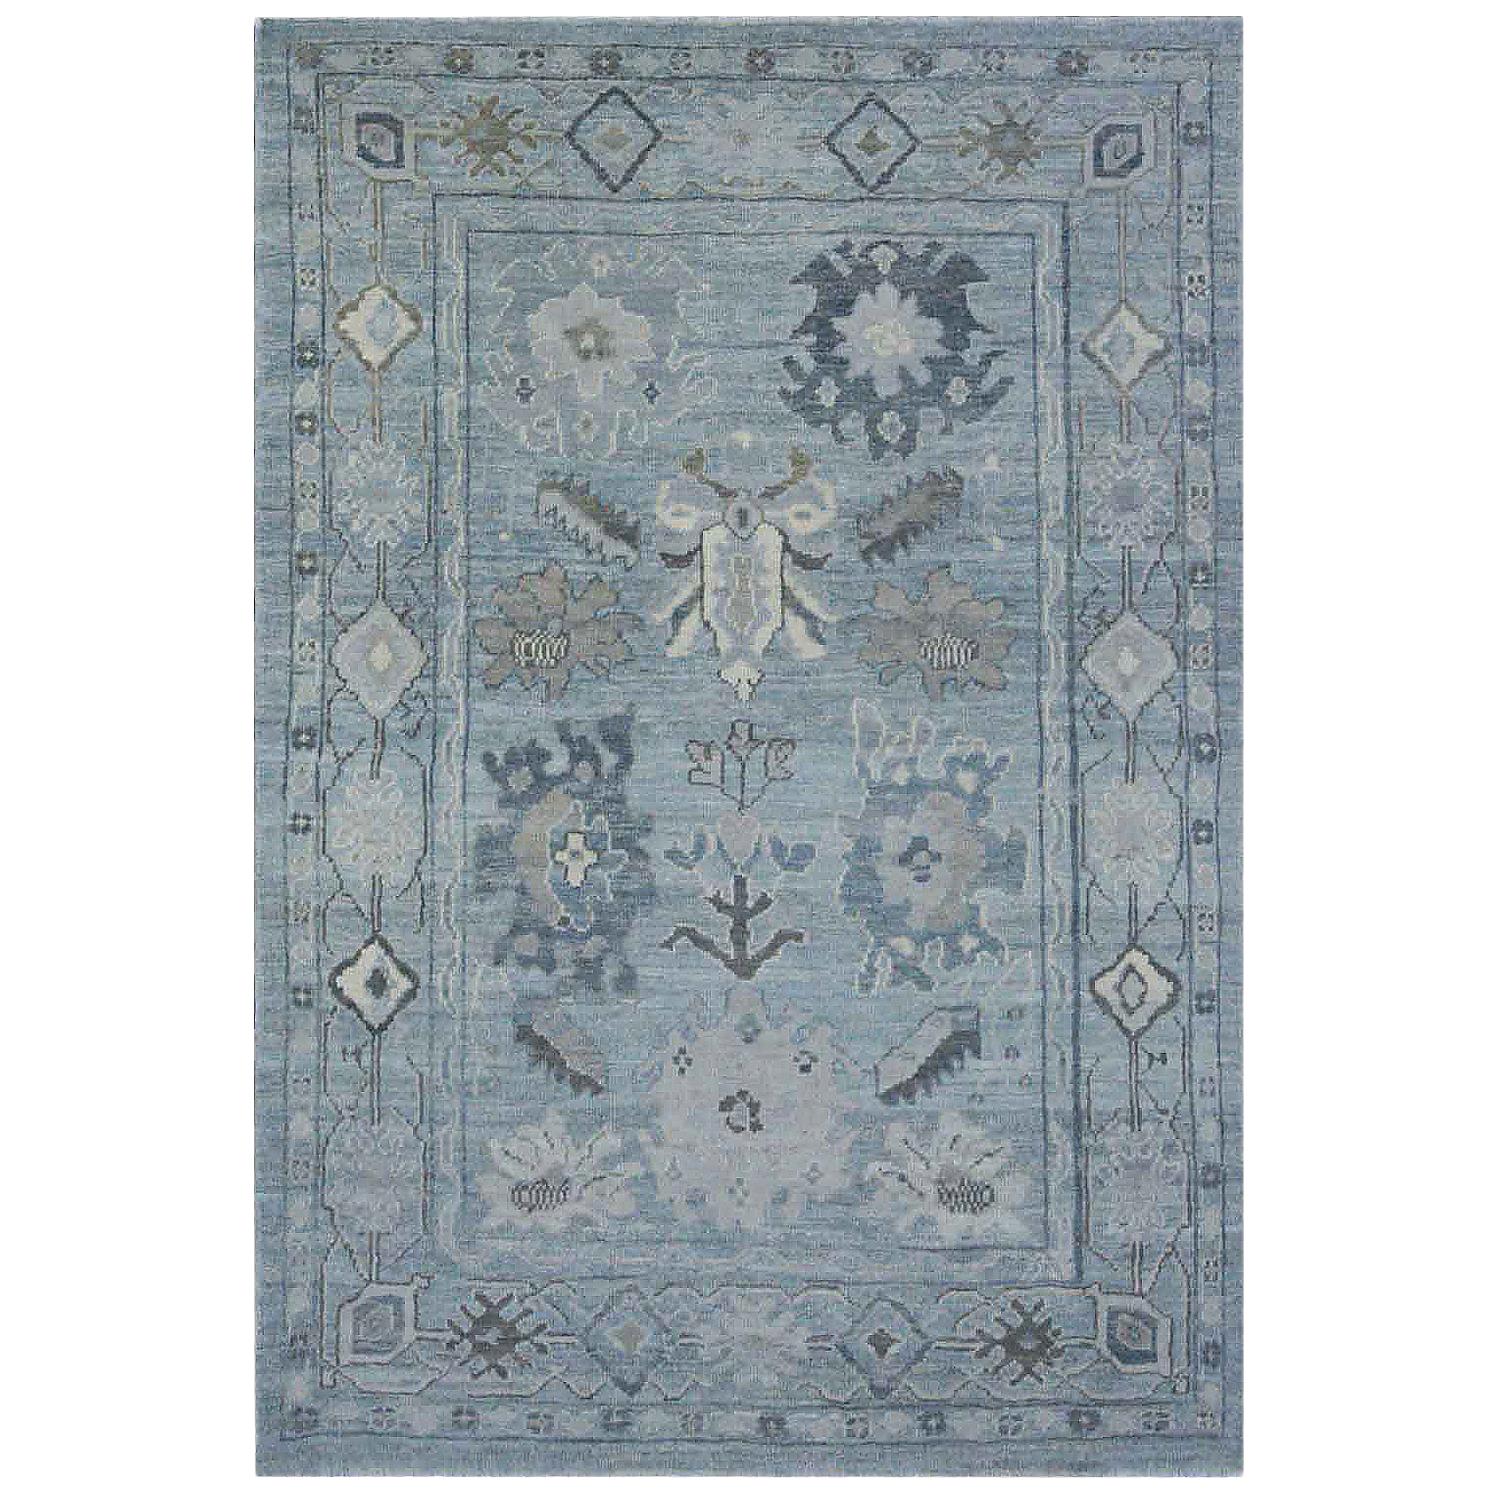 Tapis Oushak contemporain avec détails floraux en marine et gris sur fond bleu